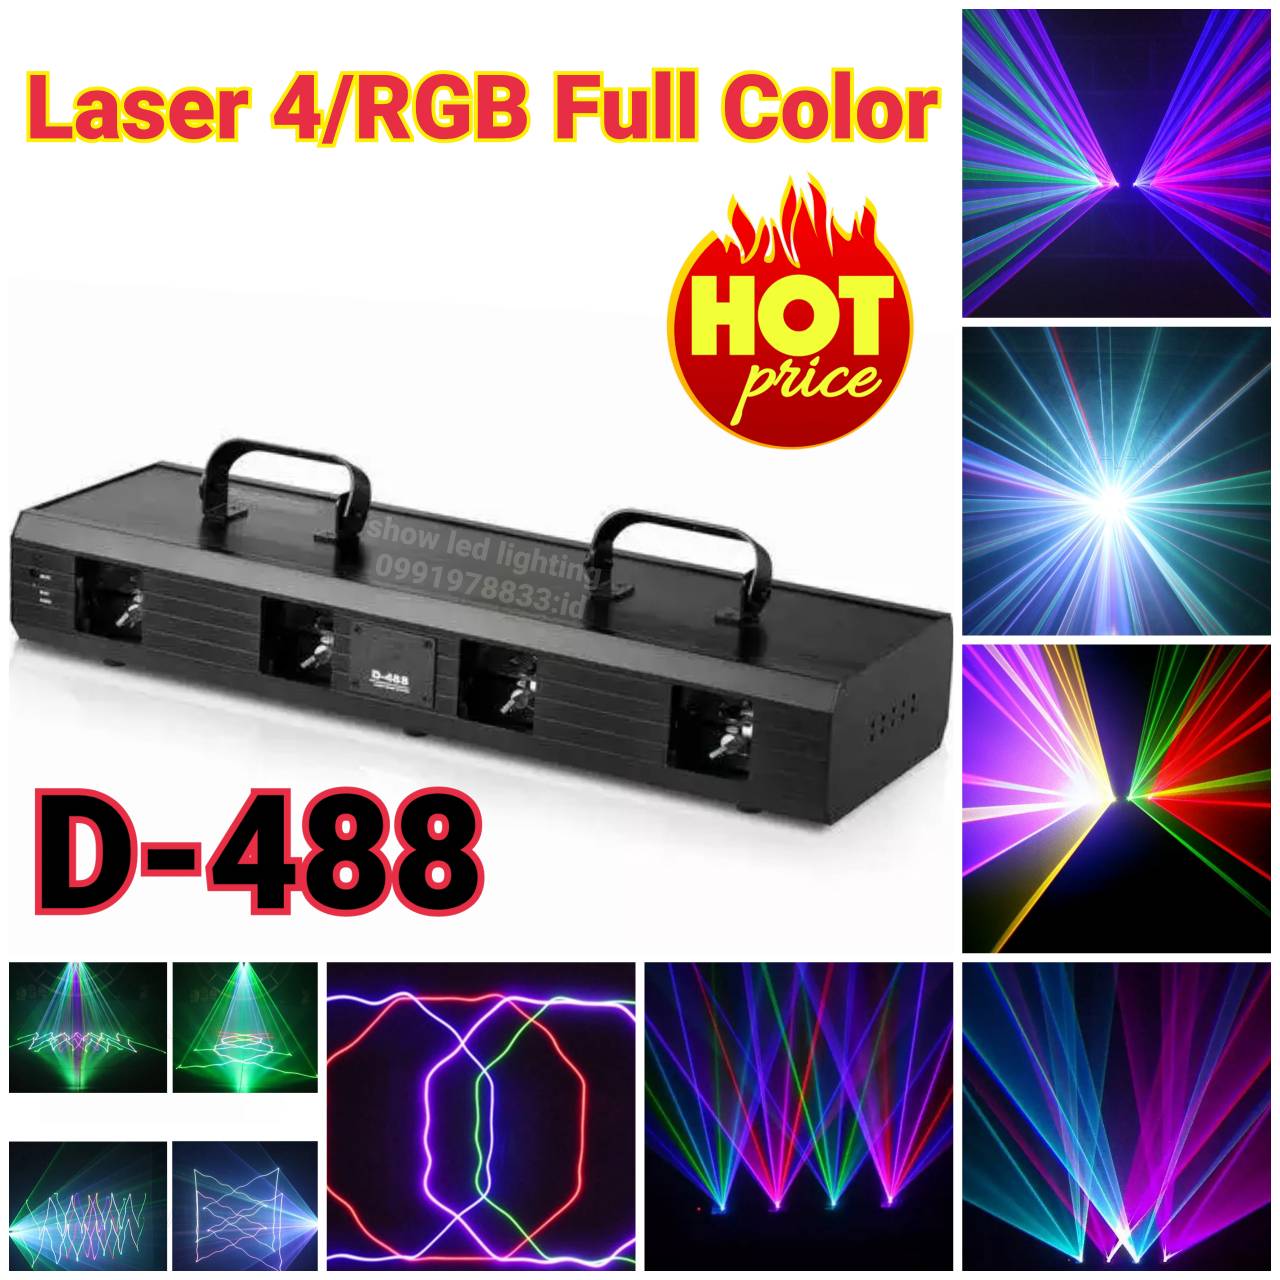 เลเซอร์ดิสโก้ 4หัว 7สี dicsco laser light PARTY LIGHT ไฟดิสโก้ ไฟดิสโก้เทค ไฟ Laser light ไฟเทค ปาร์ตี้ ไฟเวที ดิสโก้ผับ ไฟงานปาร์ตี้ ไฟเวทีแสง สี เสียง